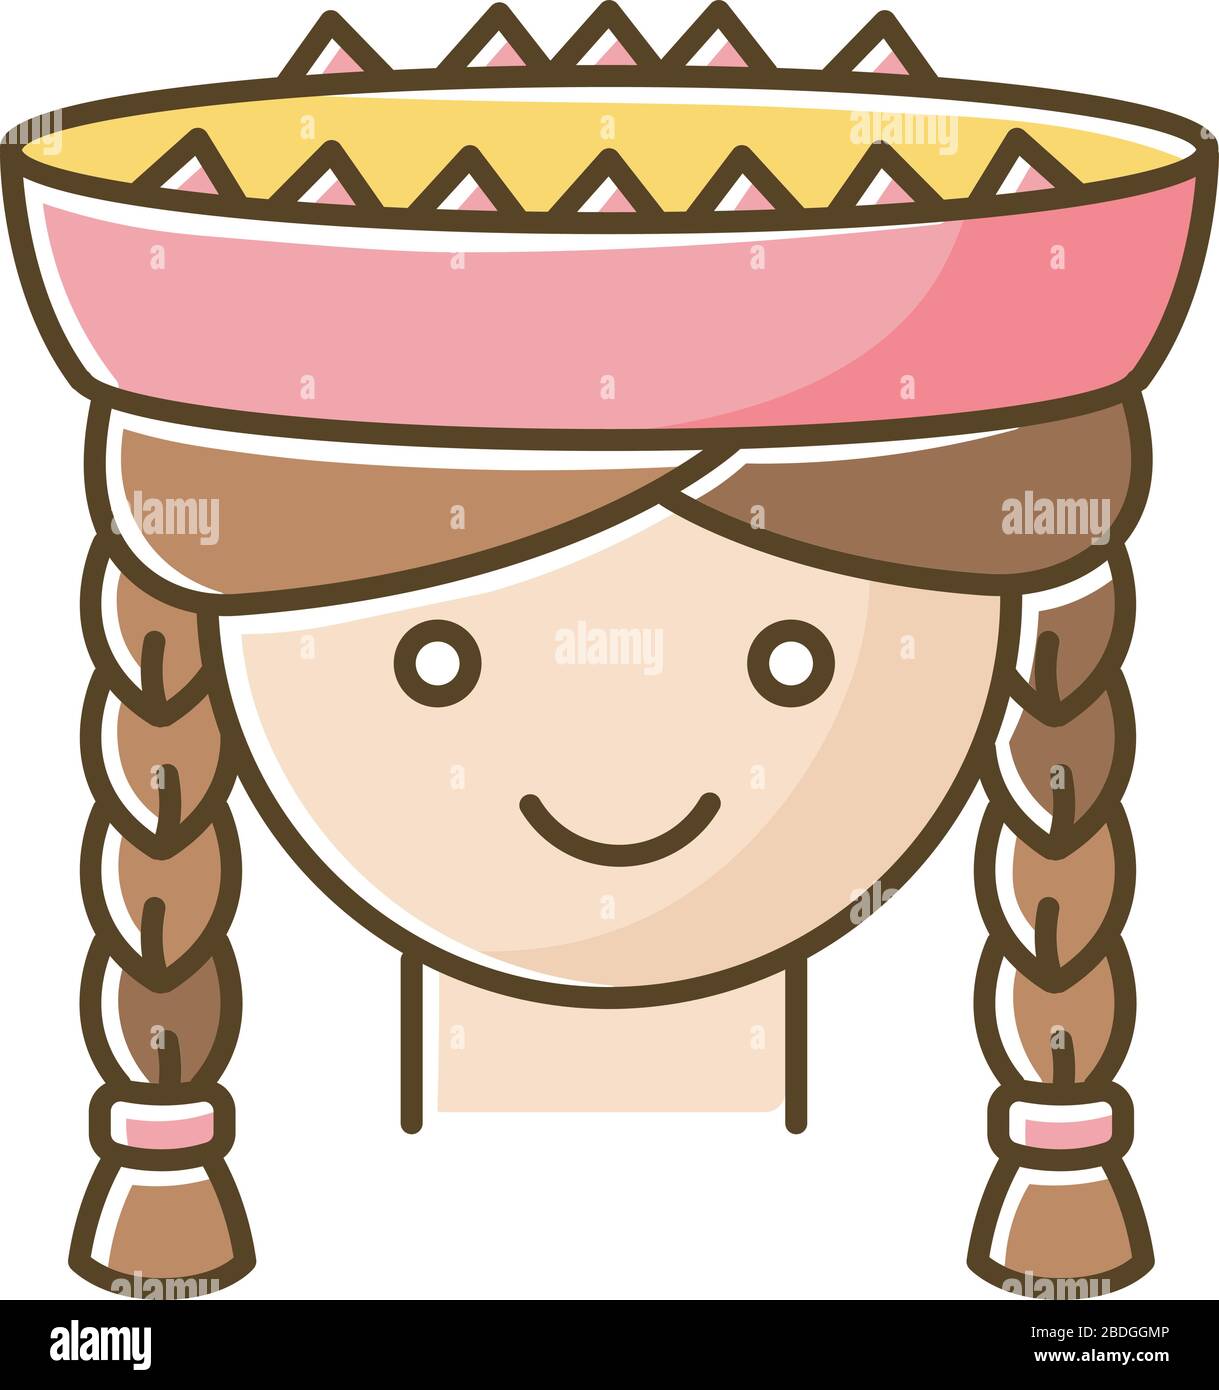 Icône de couleur RVB péruvienne gienne. Jolie tête de femme souriante avec des tresses. Jeune femme dans un chapeau traditionnel. L'adresse nationale de l'amérique latine. Enfant local du Pérou Illustration de Vecteur